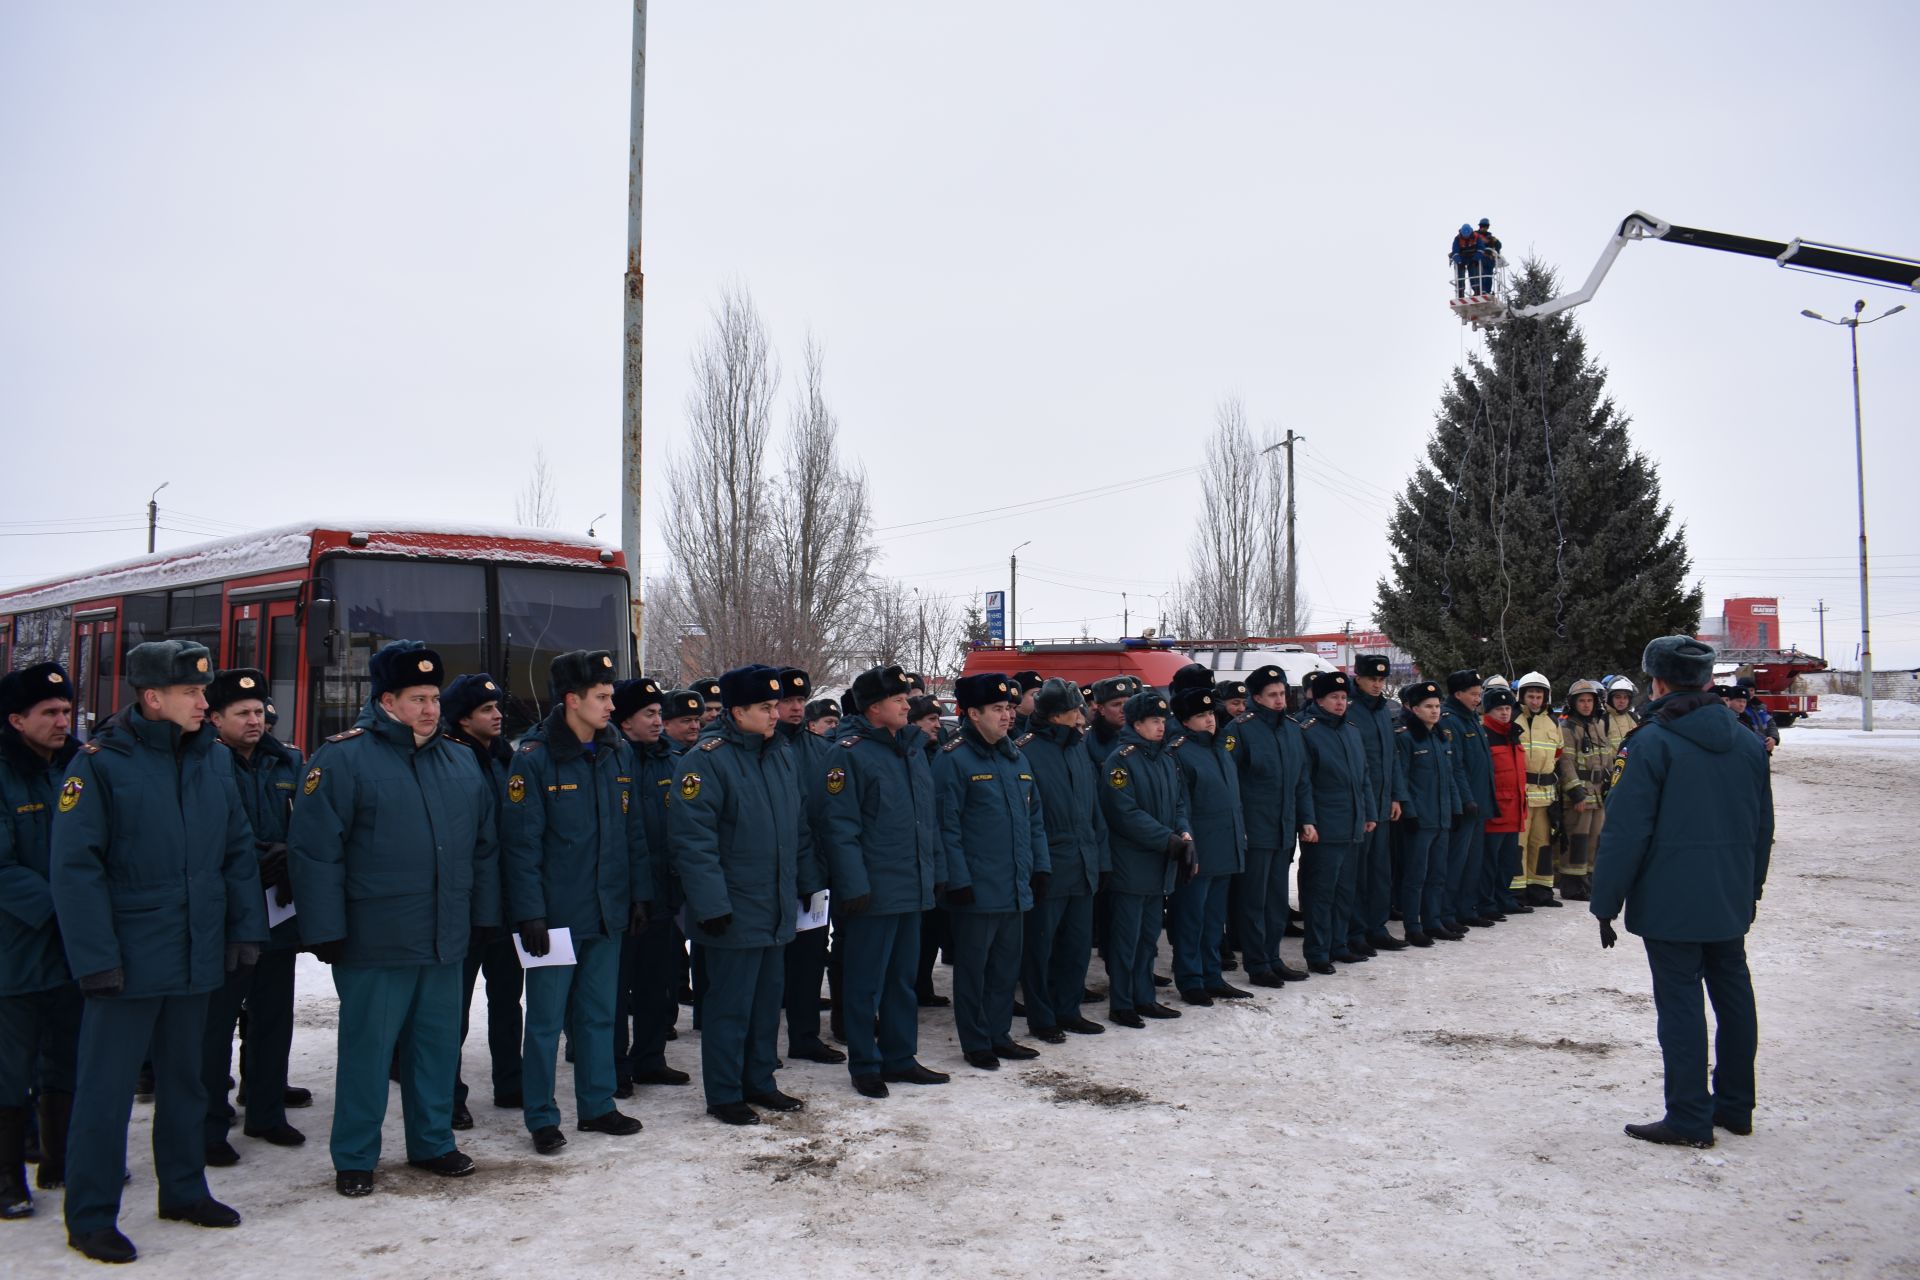 Из Ледового дворца в Чистополе срочно эвакуировали людей. На место прибыли скорая помощь и пожарные